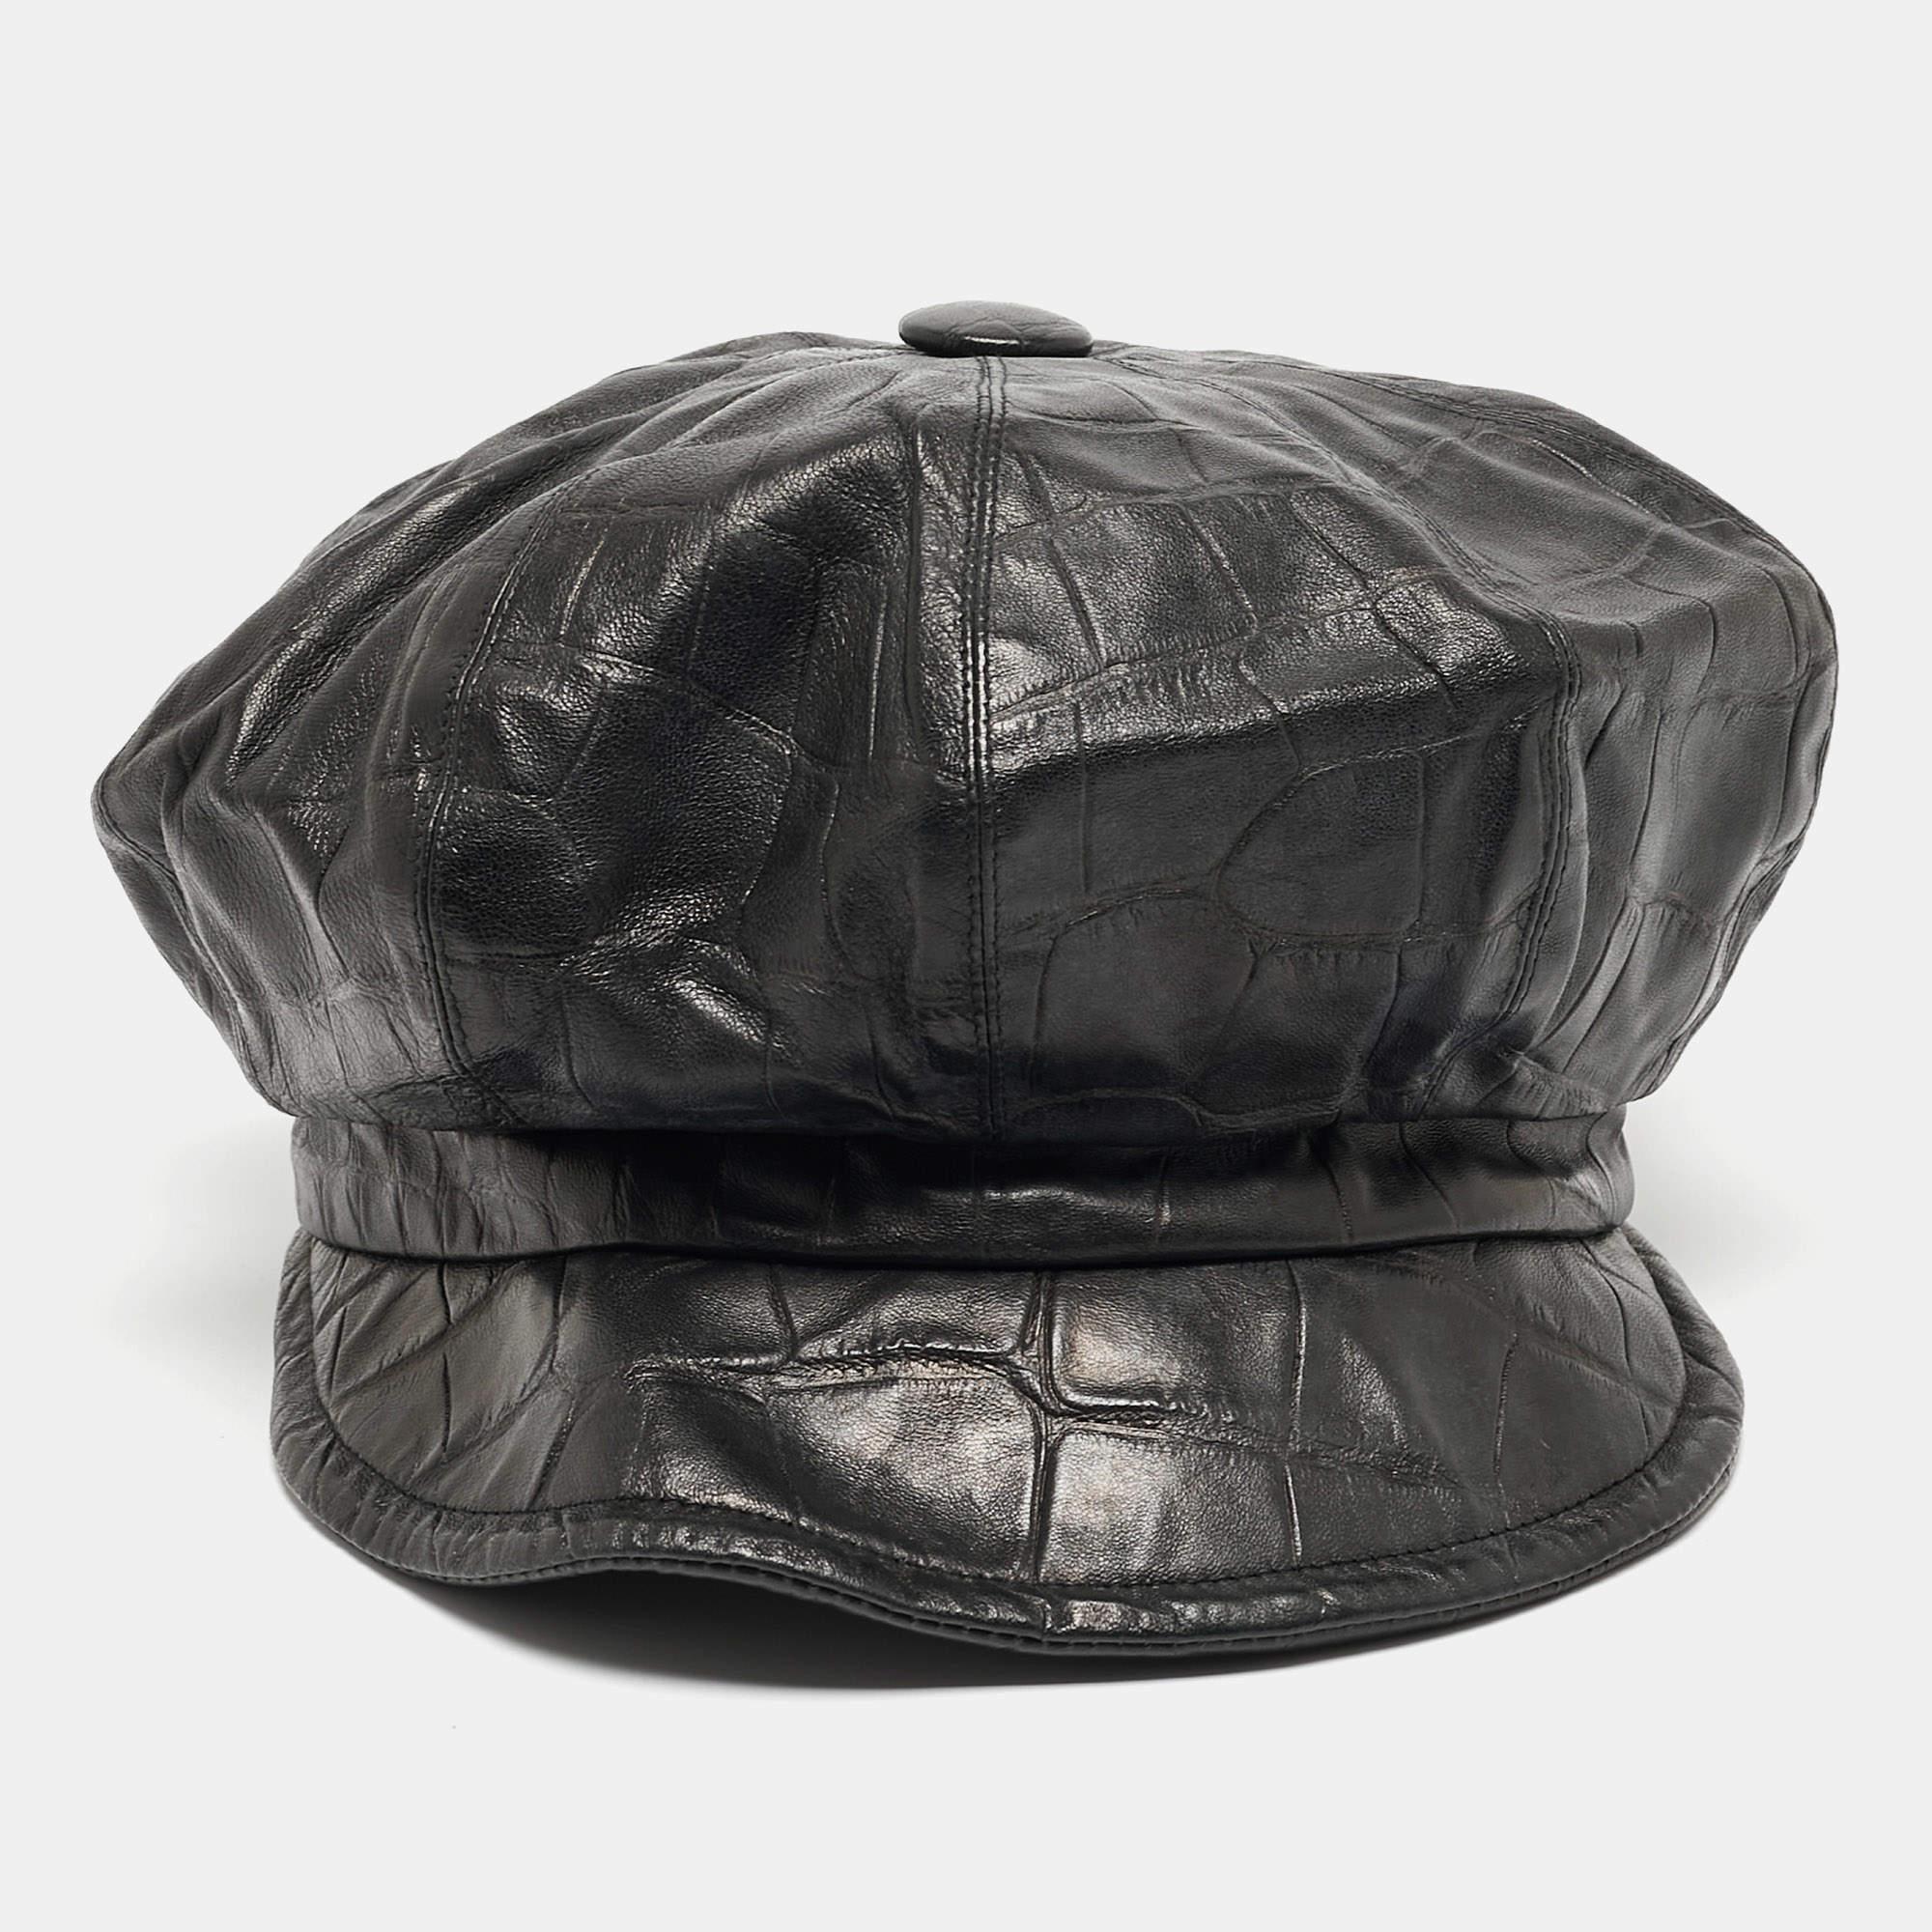 Mit dieser Newsboy-Cap von Dior verleihen Sie Ihrem Outfit den letzten Schliff. Diese schwarze Cap ist aus Leder mit Krokoprägung gefertigt und trägt auf der Rückseite den Markennamen.

